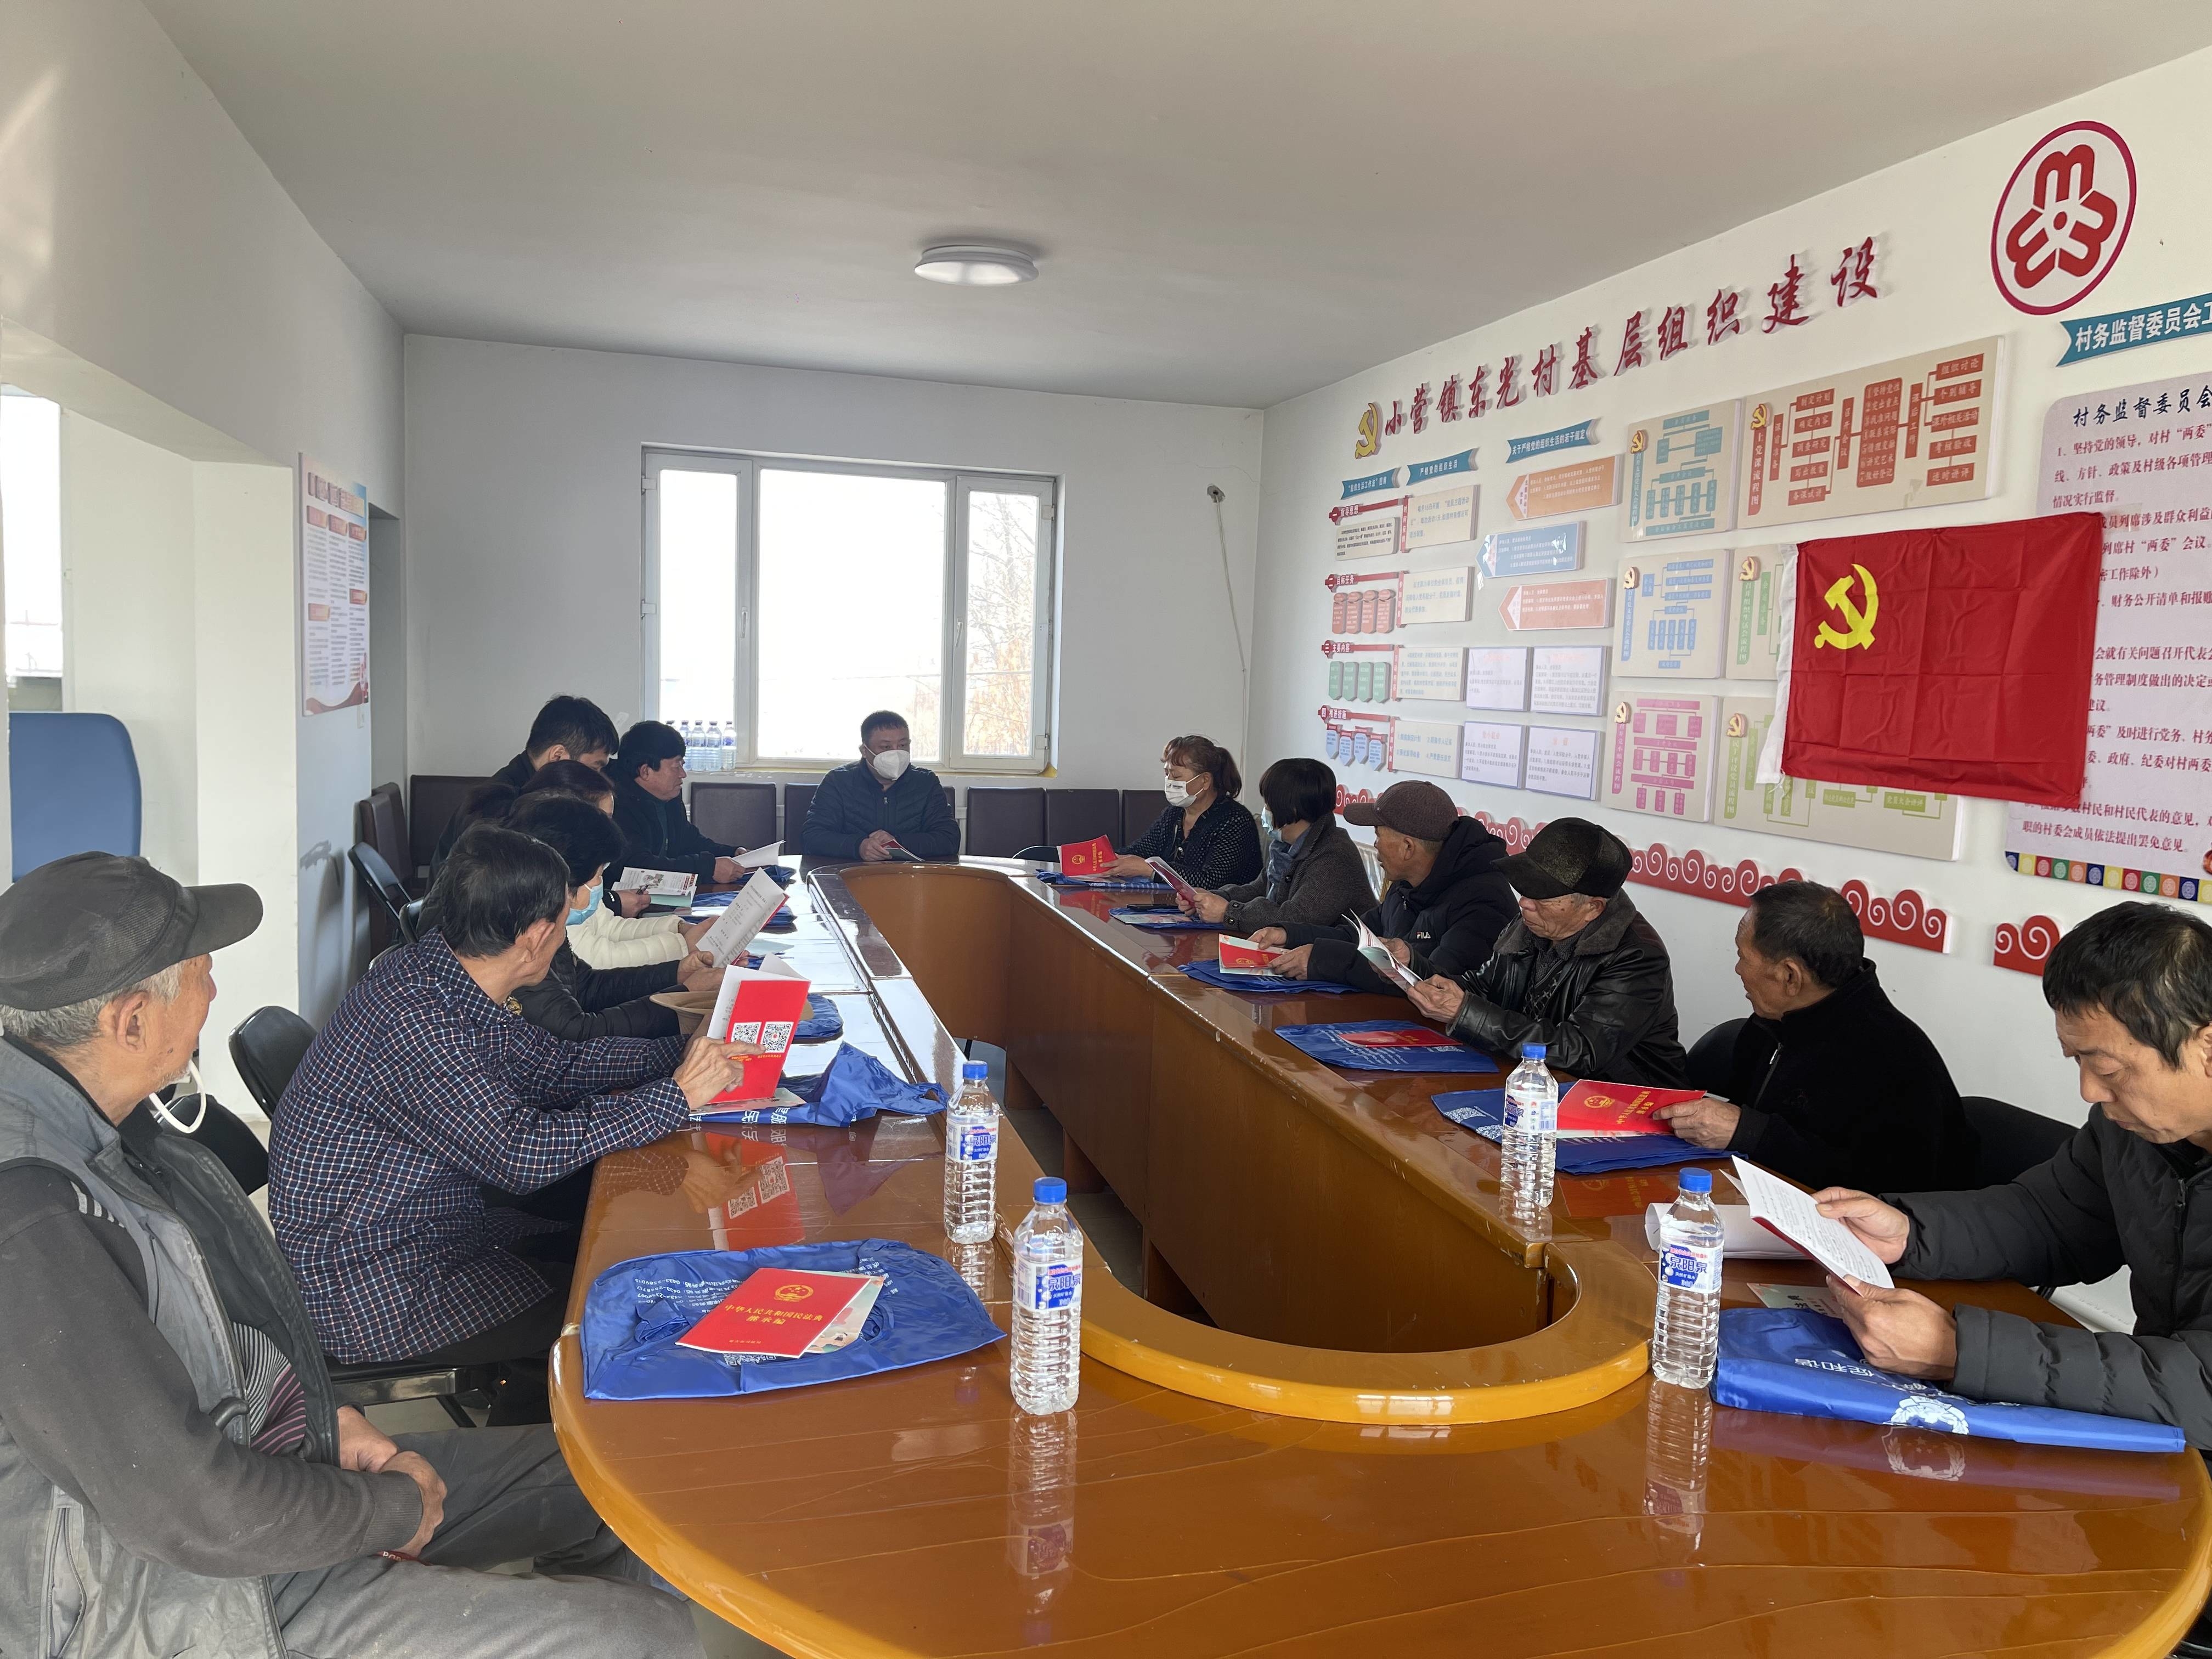 延吉市司法局小营司法所开展“送法进乡村”普法宣传活动